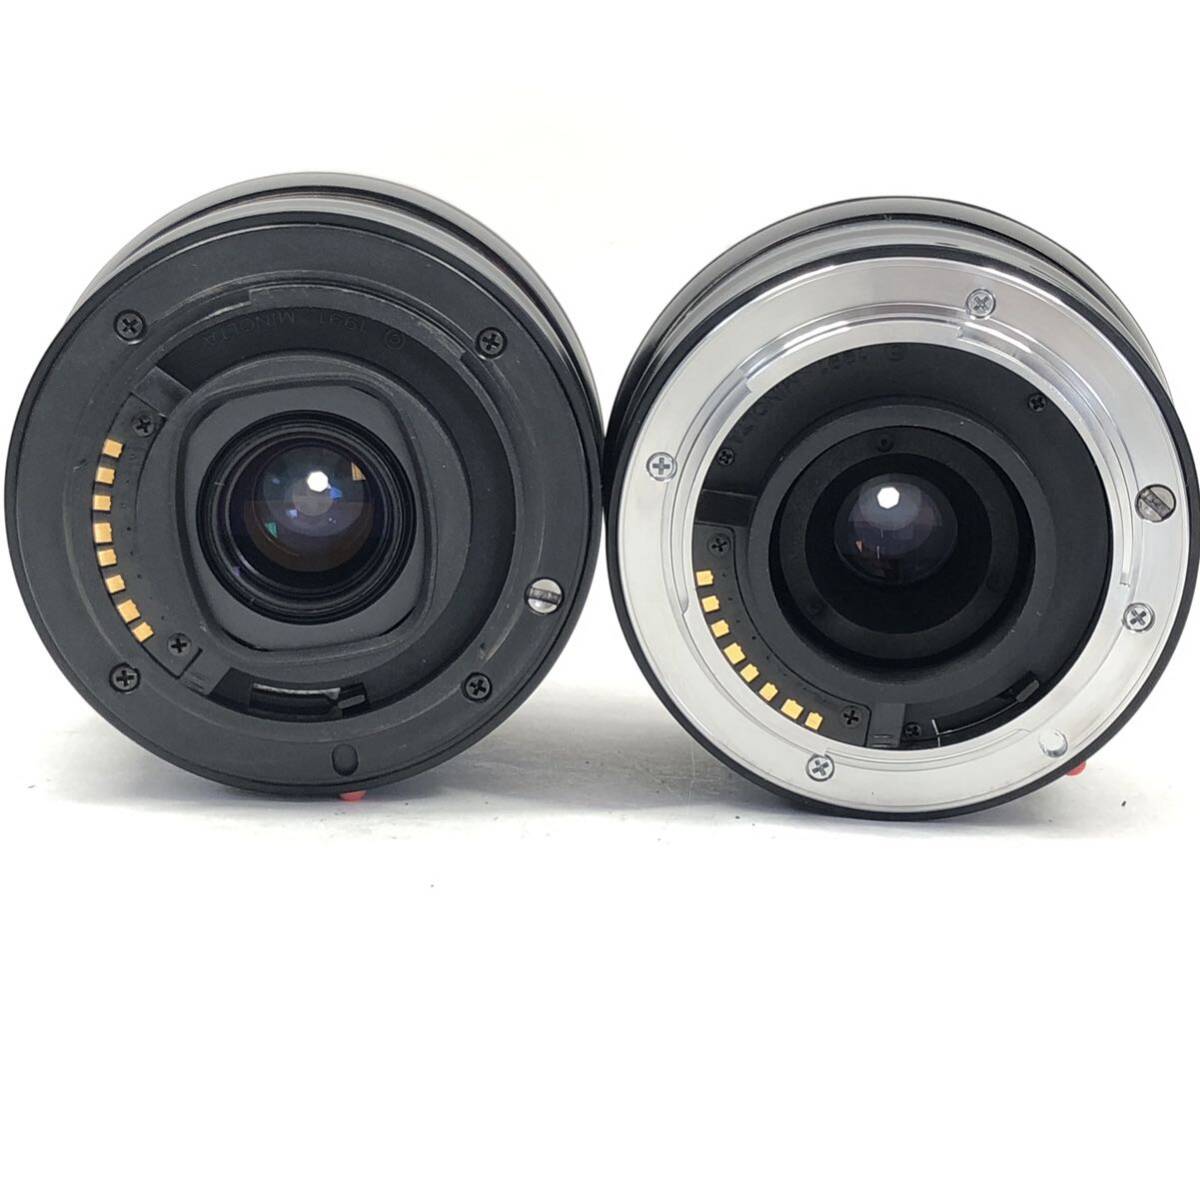 Minolta AF ZOOM Xi 28-80mm F4-5.6 / 80-200mm F4.5-5.6 ミノルタ Aマウント レンズ2本まとめセット #8480の画像3